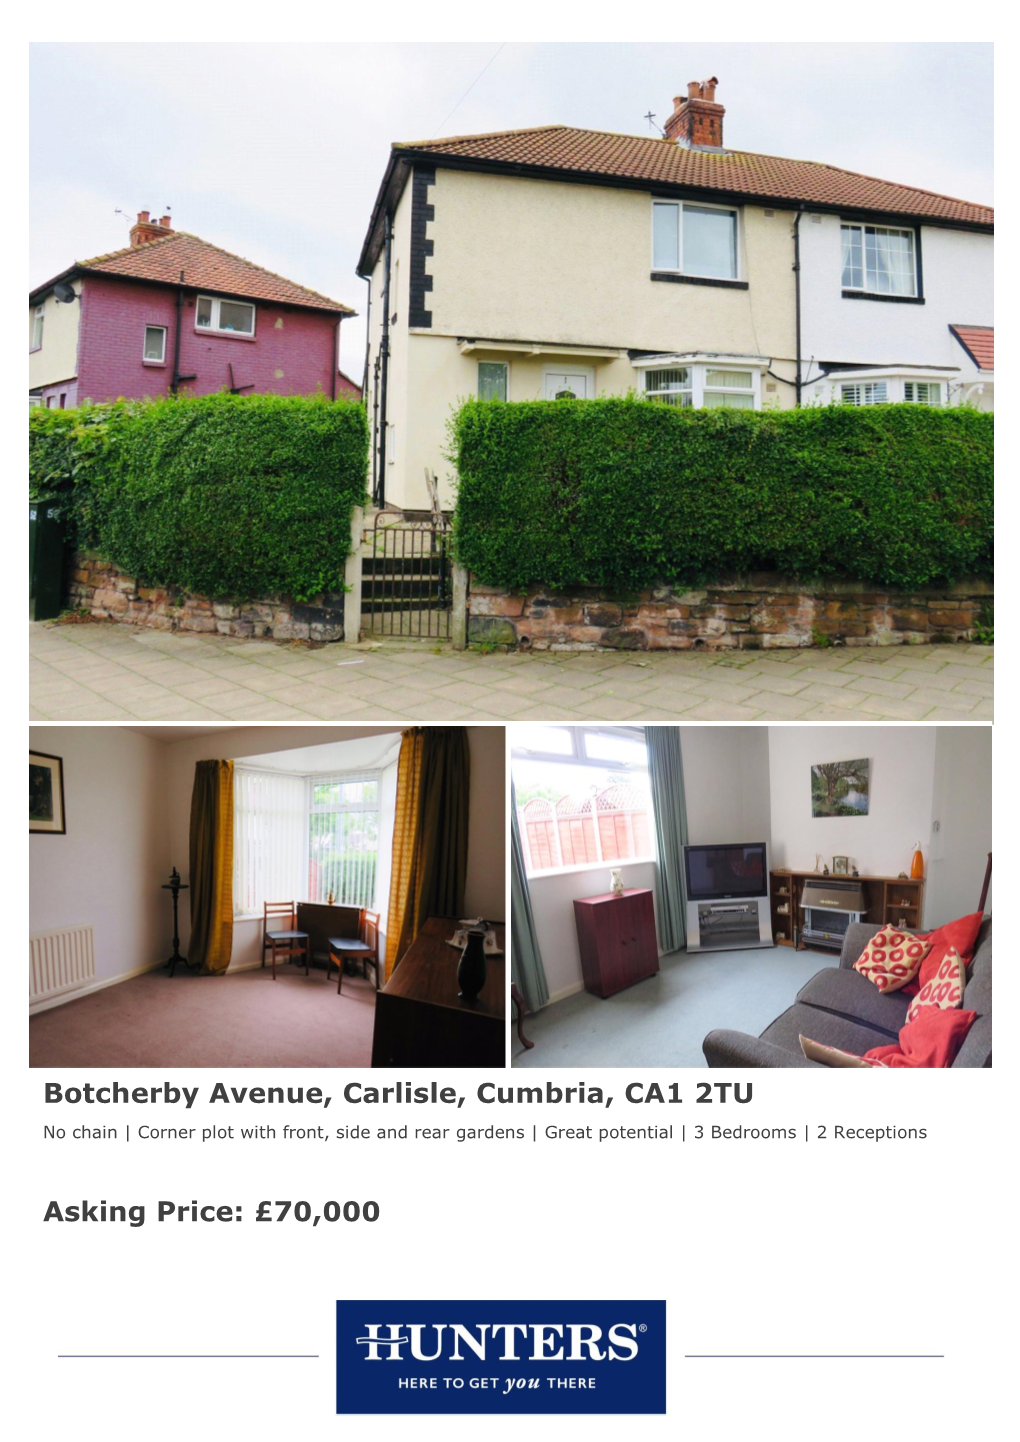 Botcherby Avenue, Carlisle, Cumbria, CA1 2TU Asking Price: £70,000